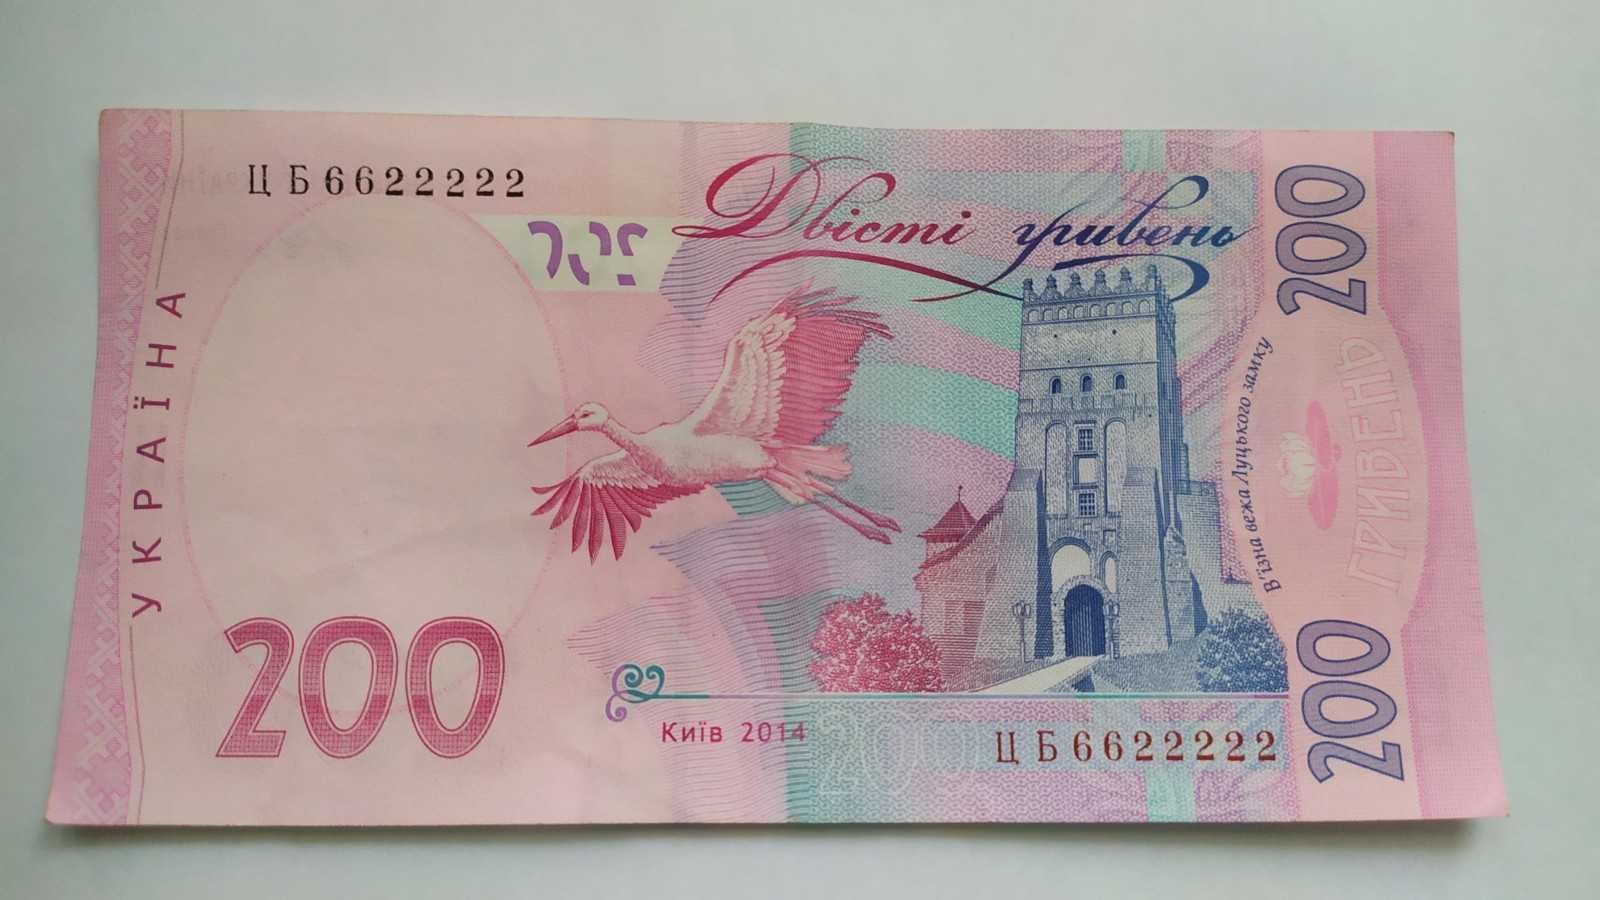 бона Украины банкнота 200 грн красивый номер 6622222 4333303 5555055